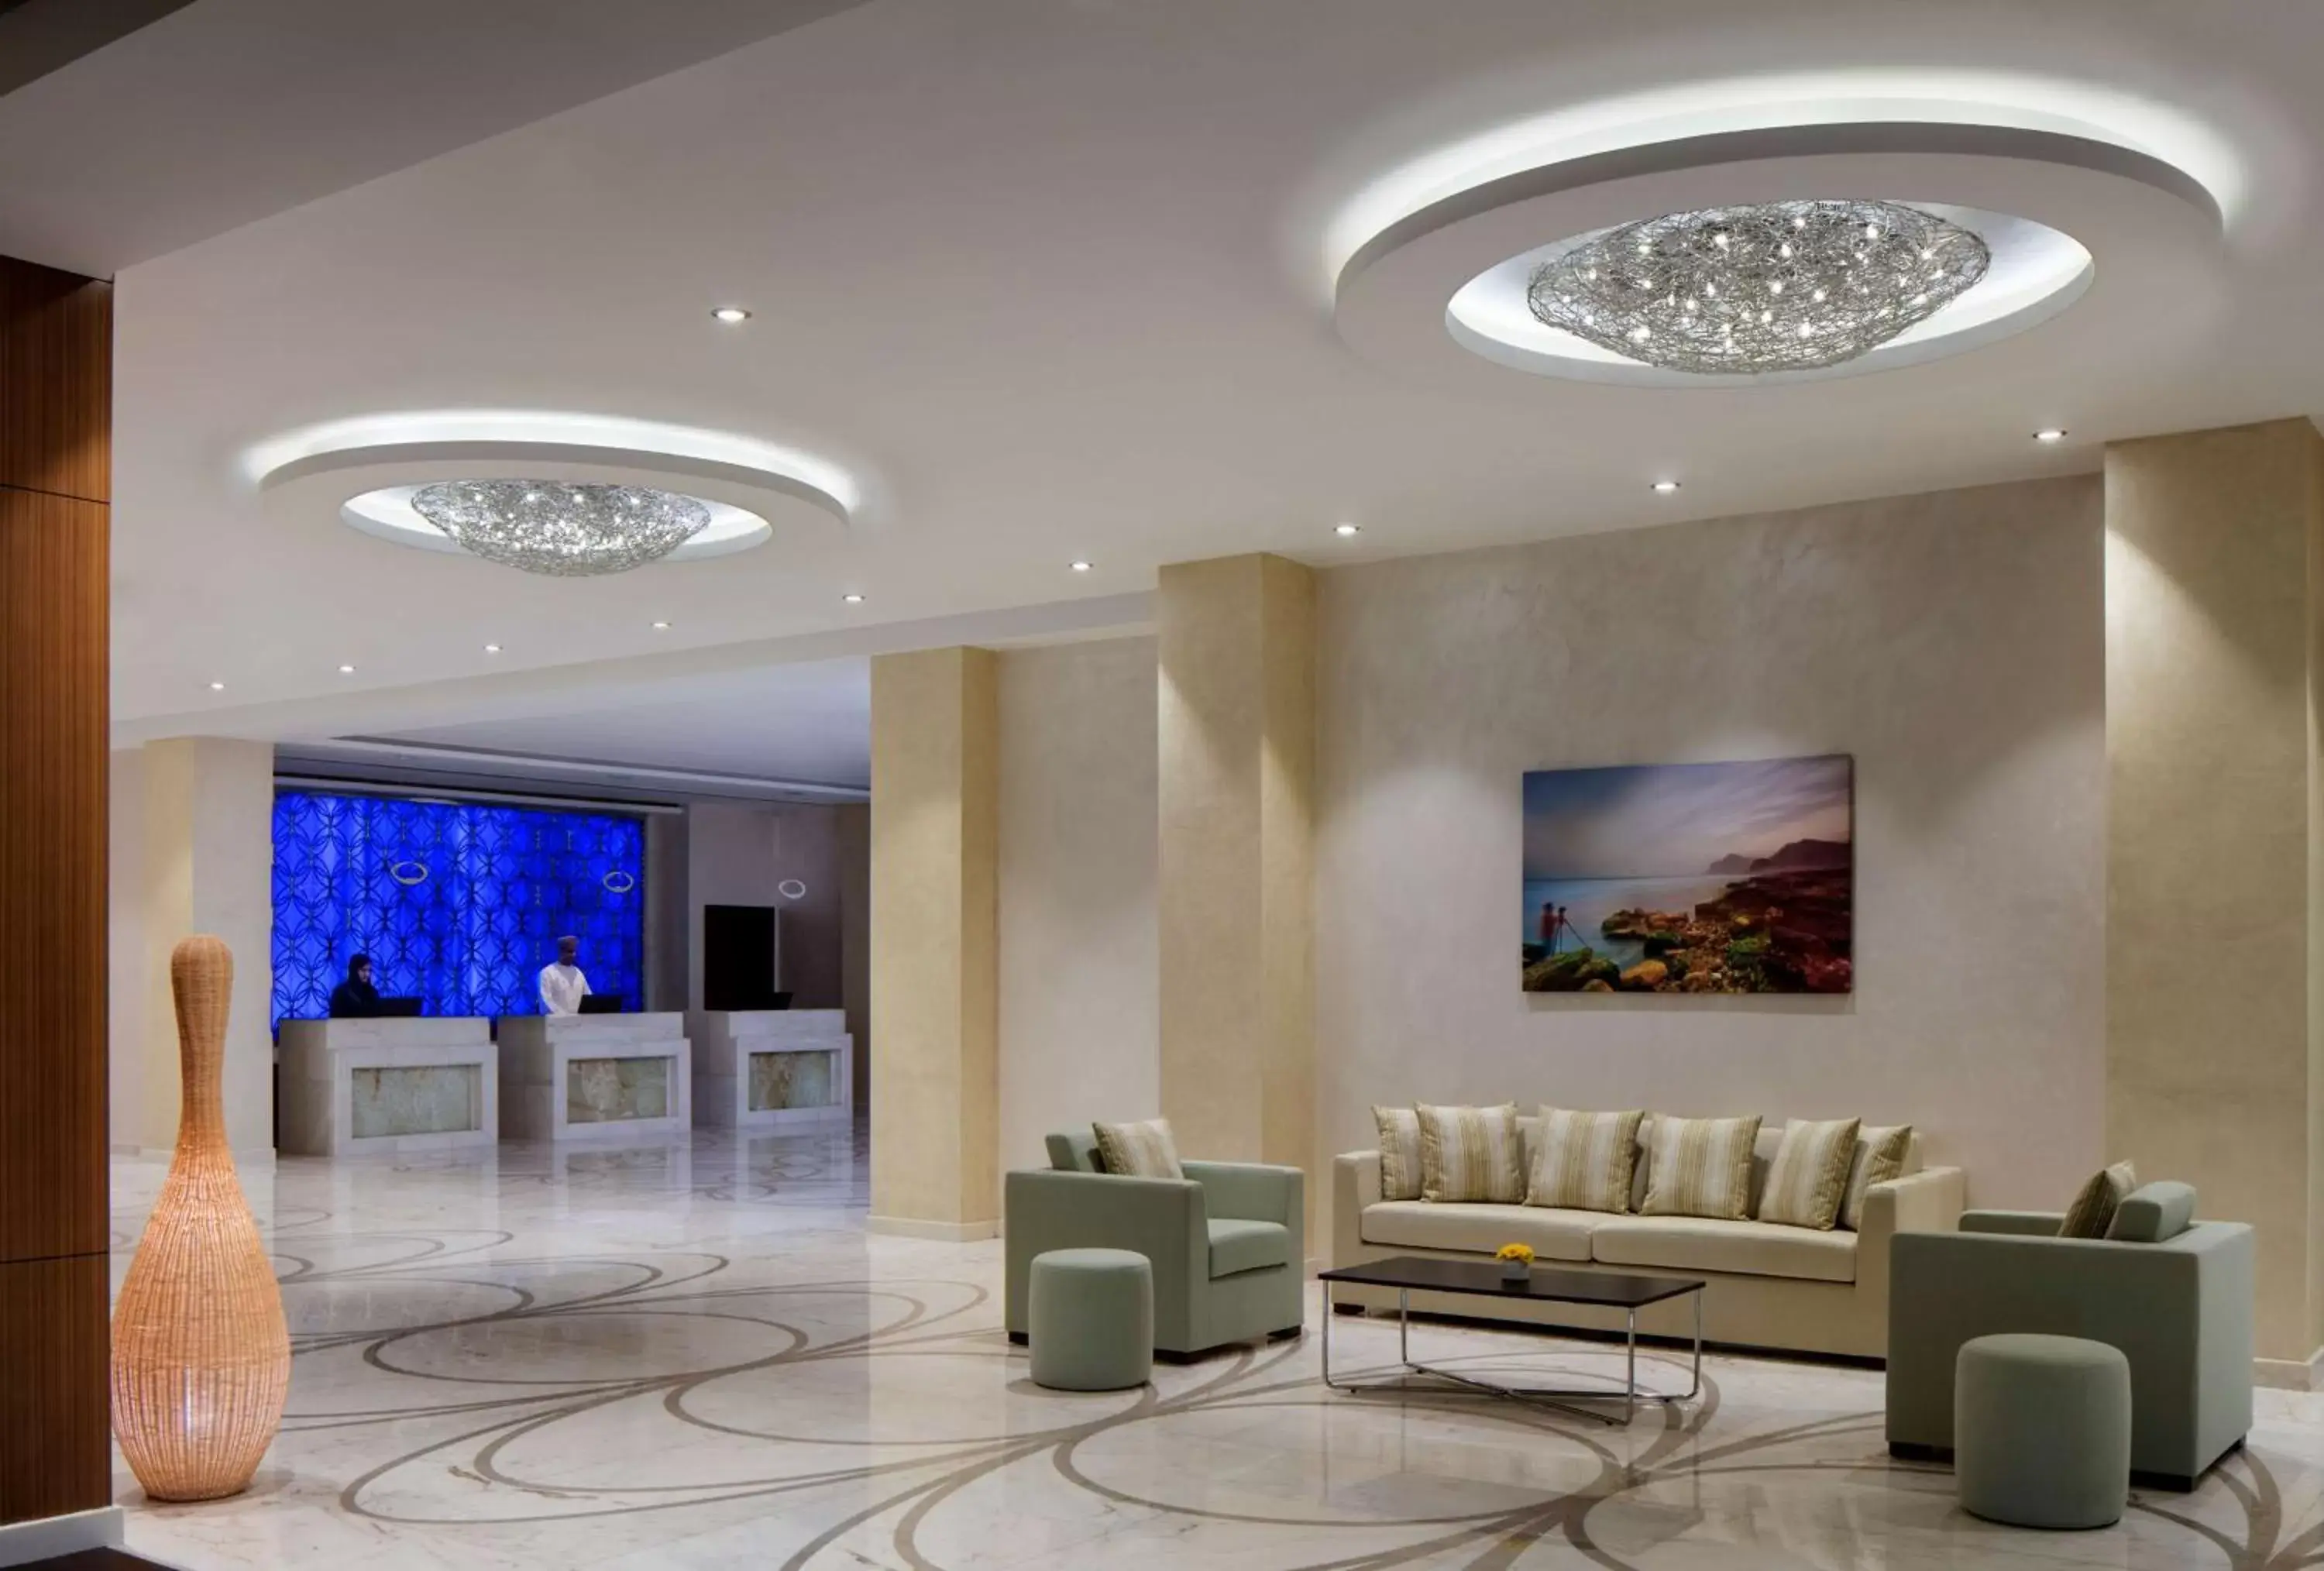 Lobby or reception, Lobby/Reception in Radisson Blu Hotel Sohar